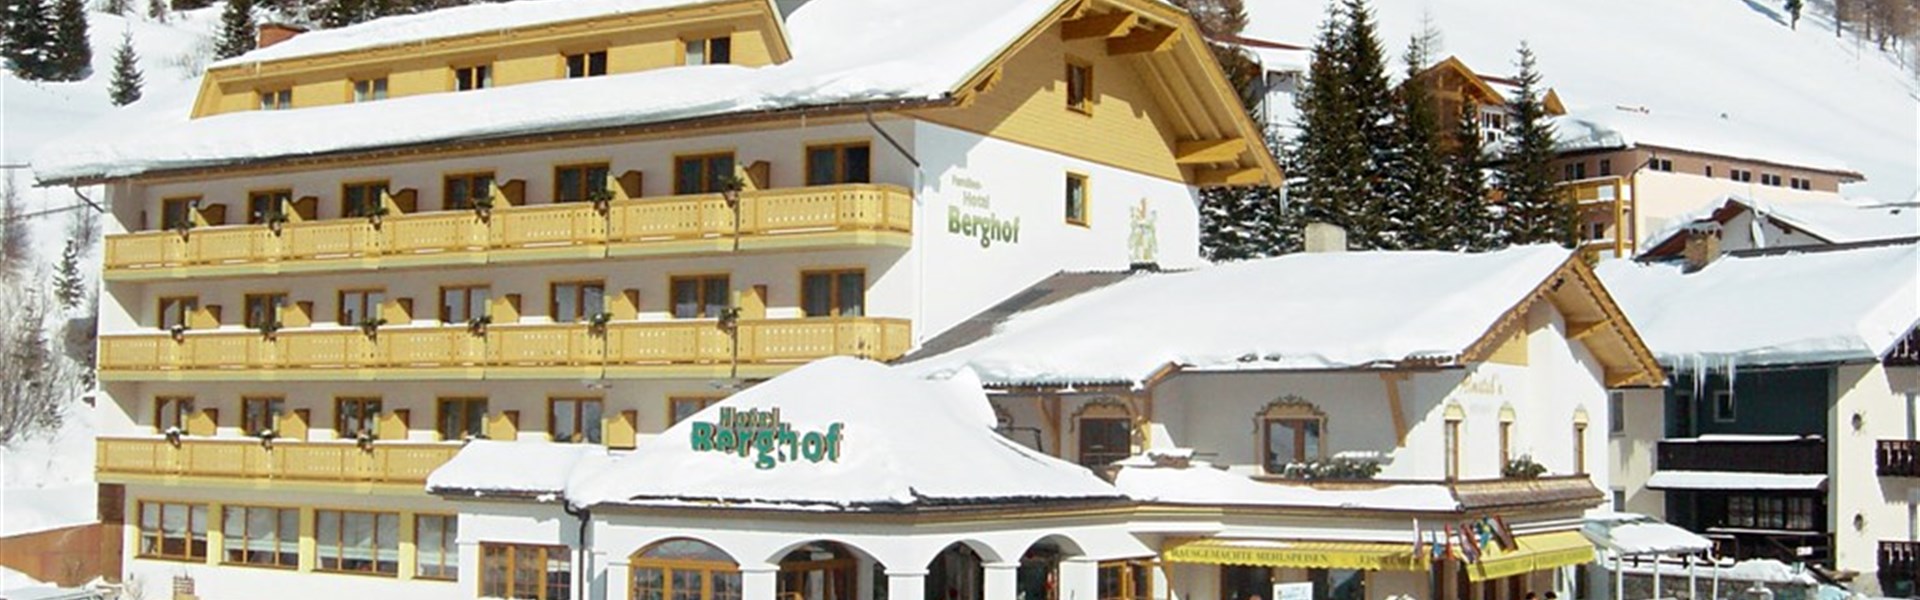 Marco Polo - Familienhotel Berghof (W) - 